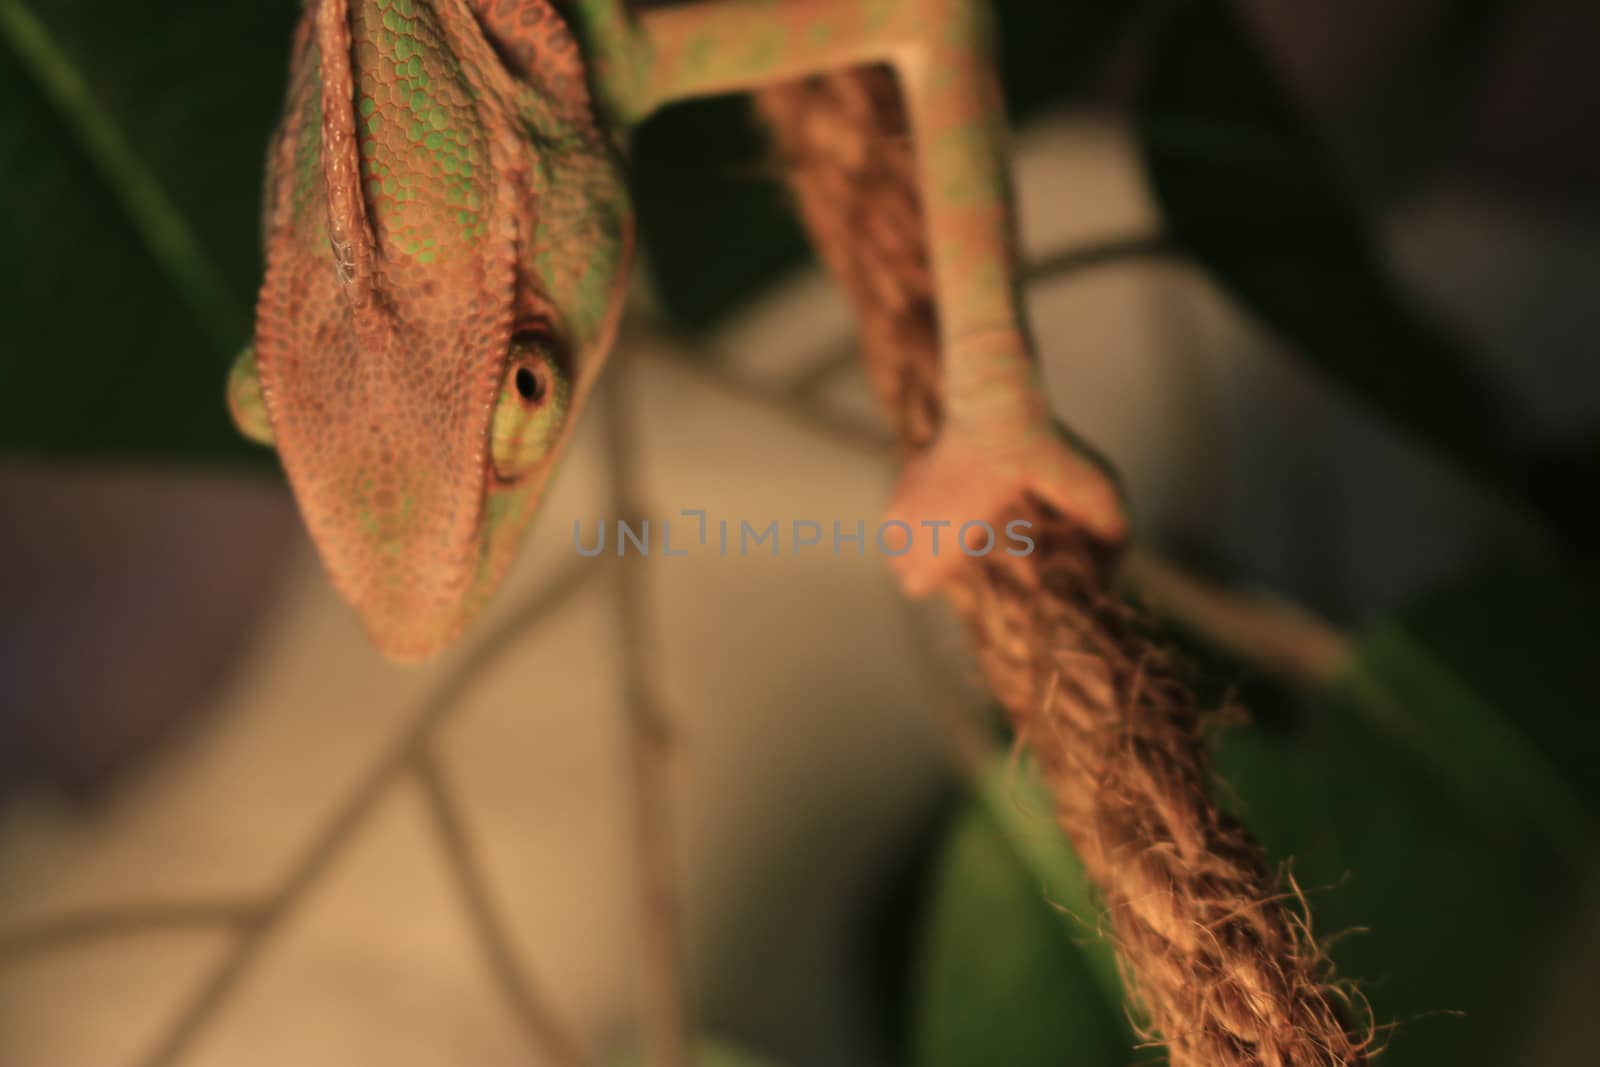 Veiled Chameleon on plant against green background/Yemen Chameleon/Veiled Chameleon (Chamaeleo Calyptratus) by mynewturtle1